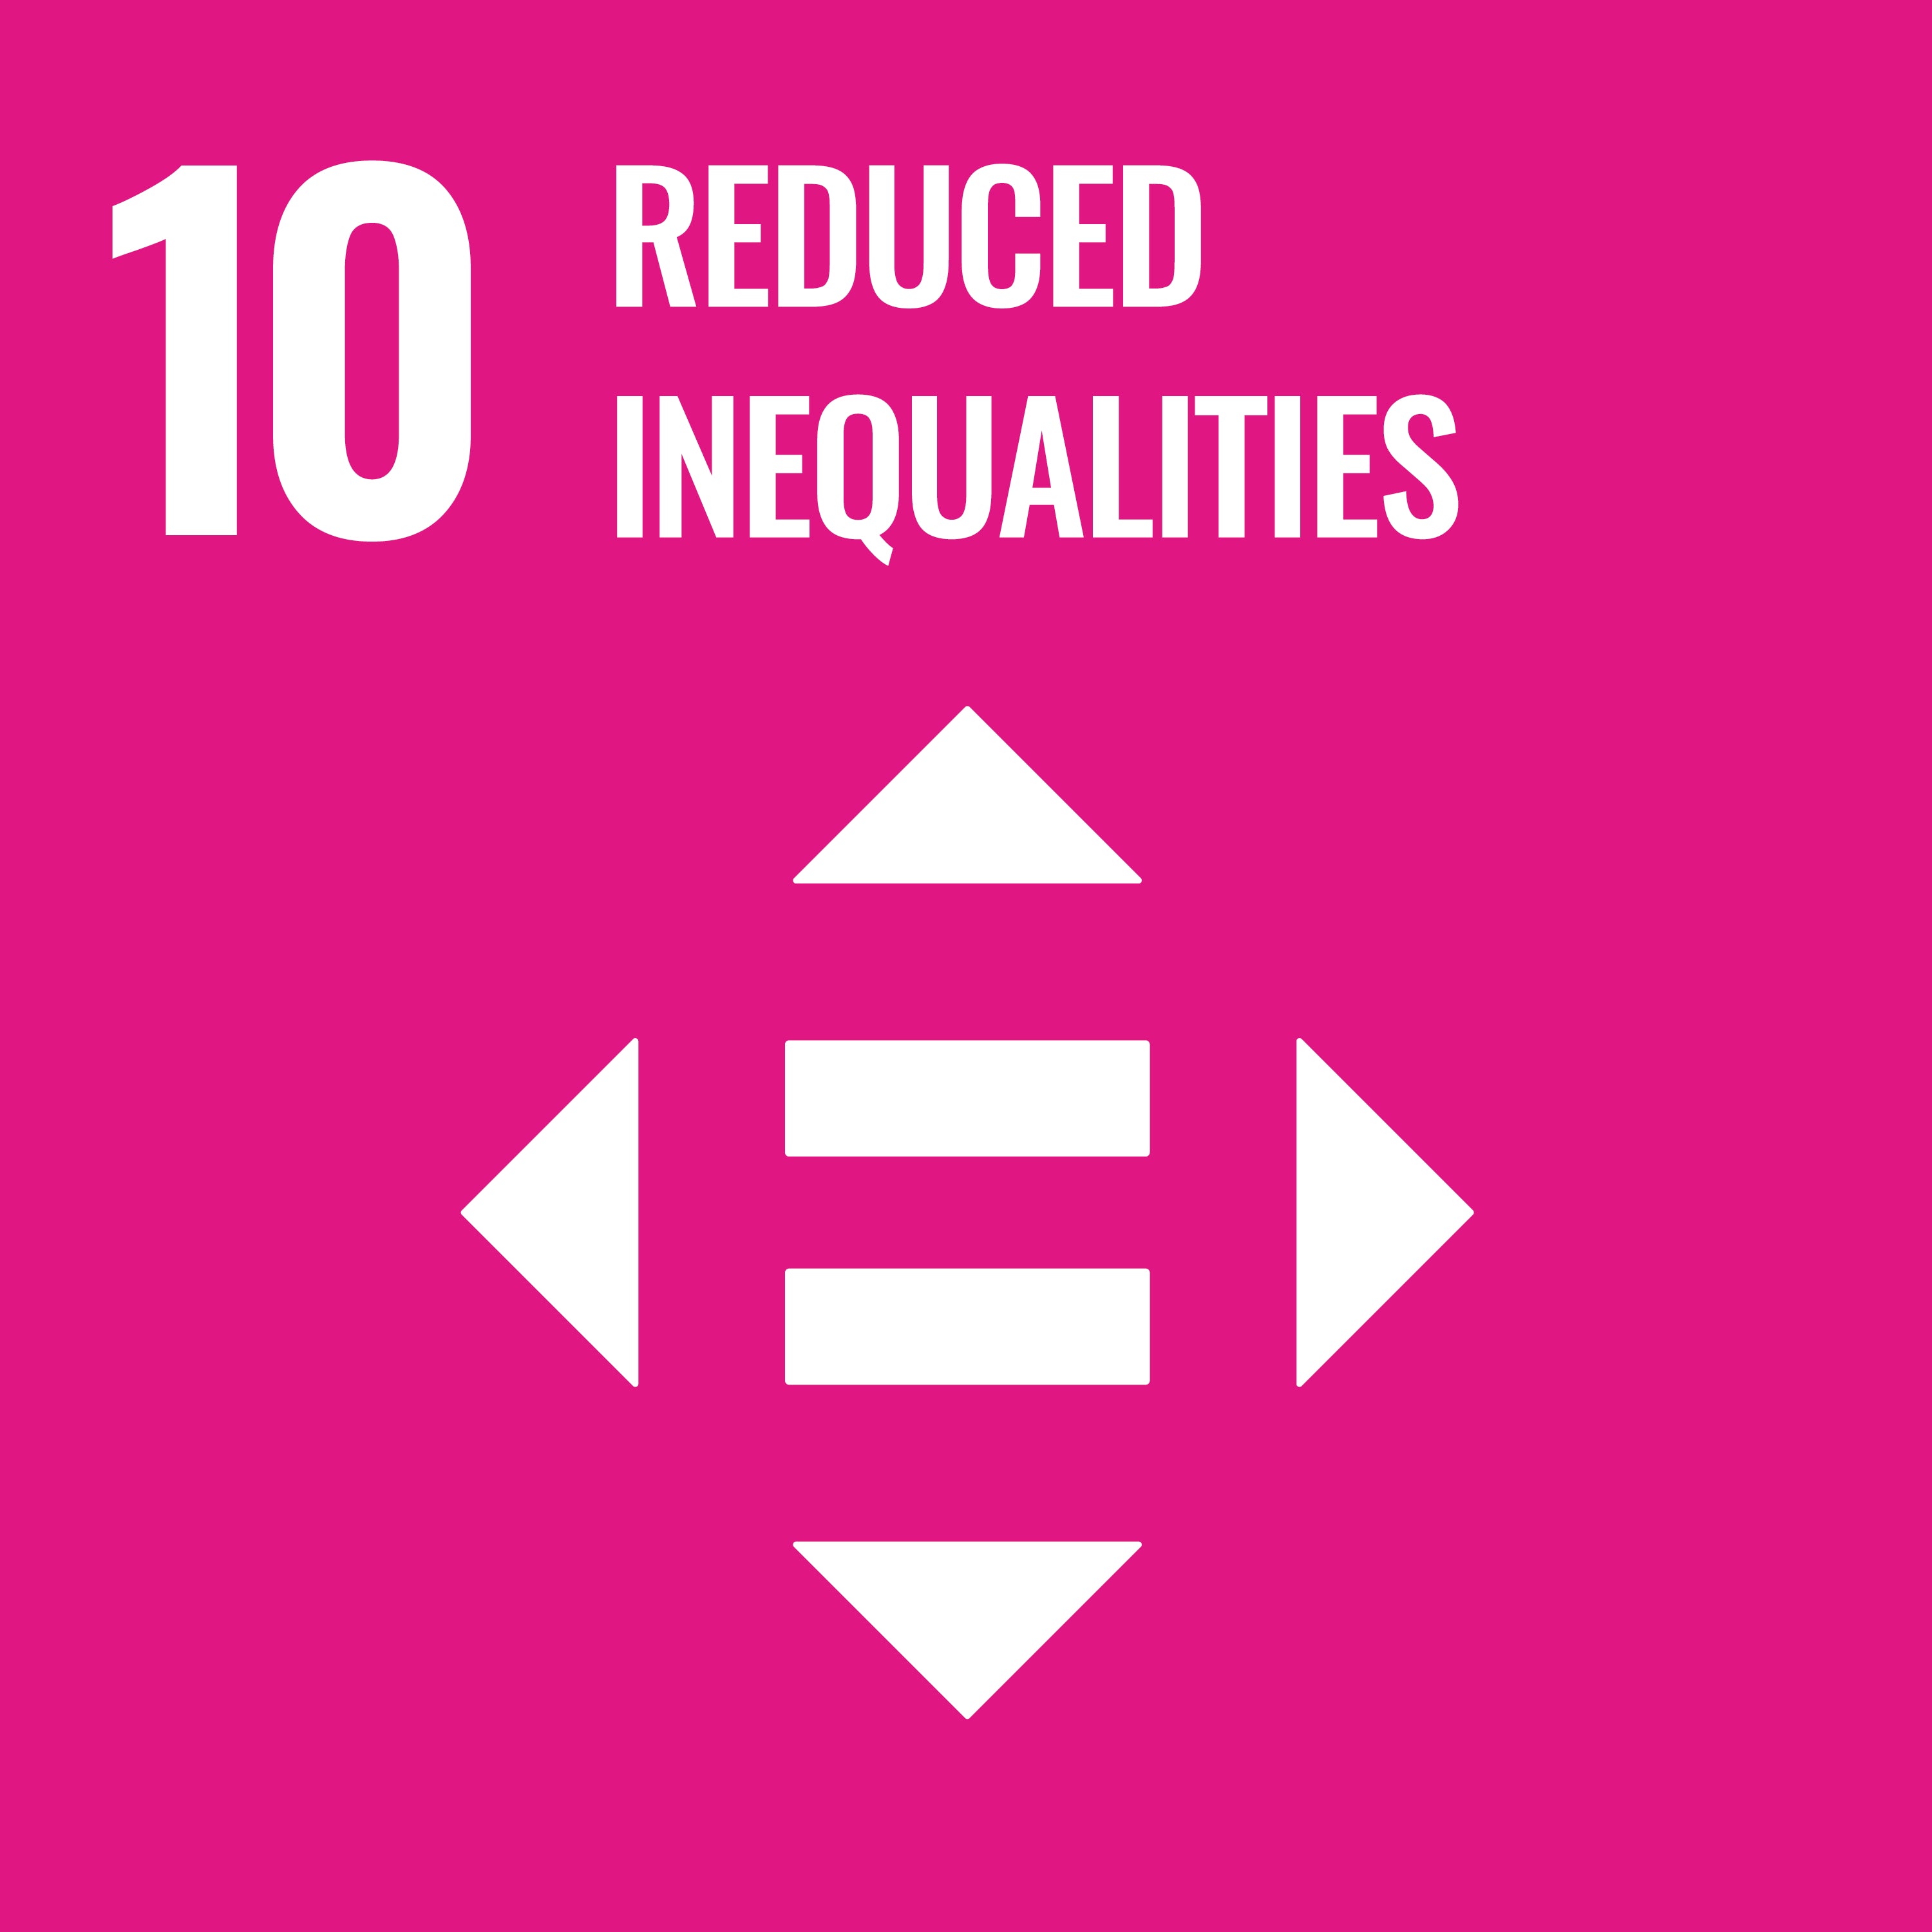 UN Sustainable Development Goals 10 - Reduced Inequalities